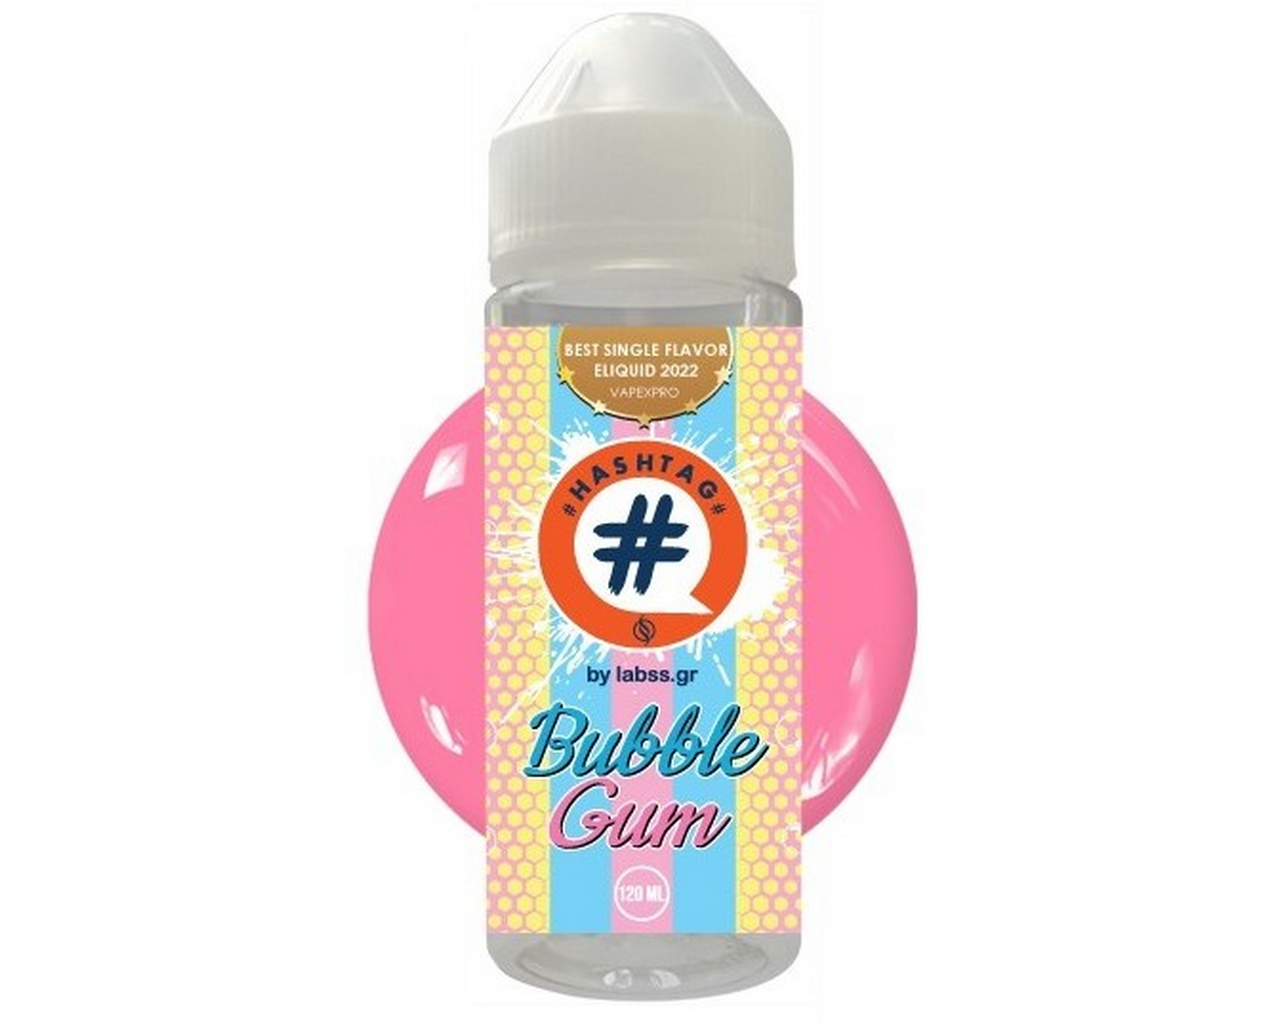 Hashtag Flavorshot Bubblegum